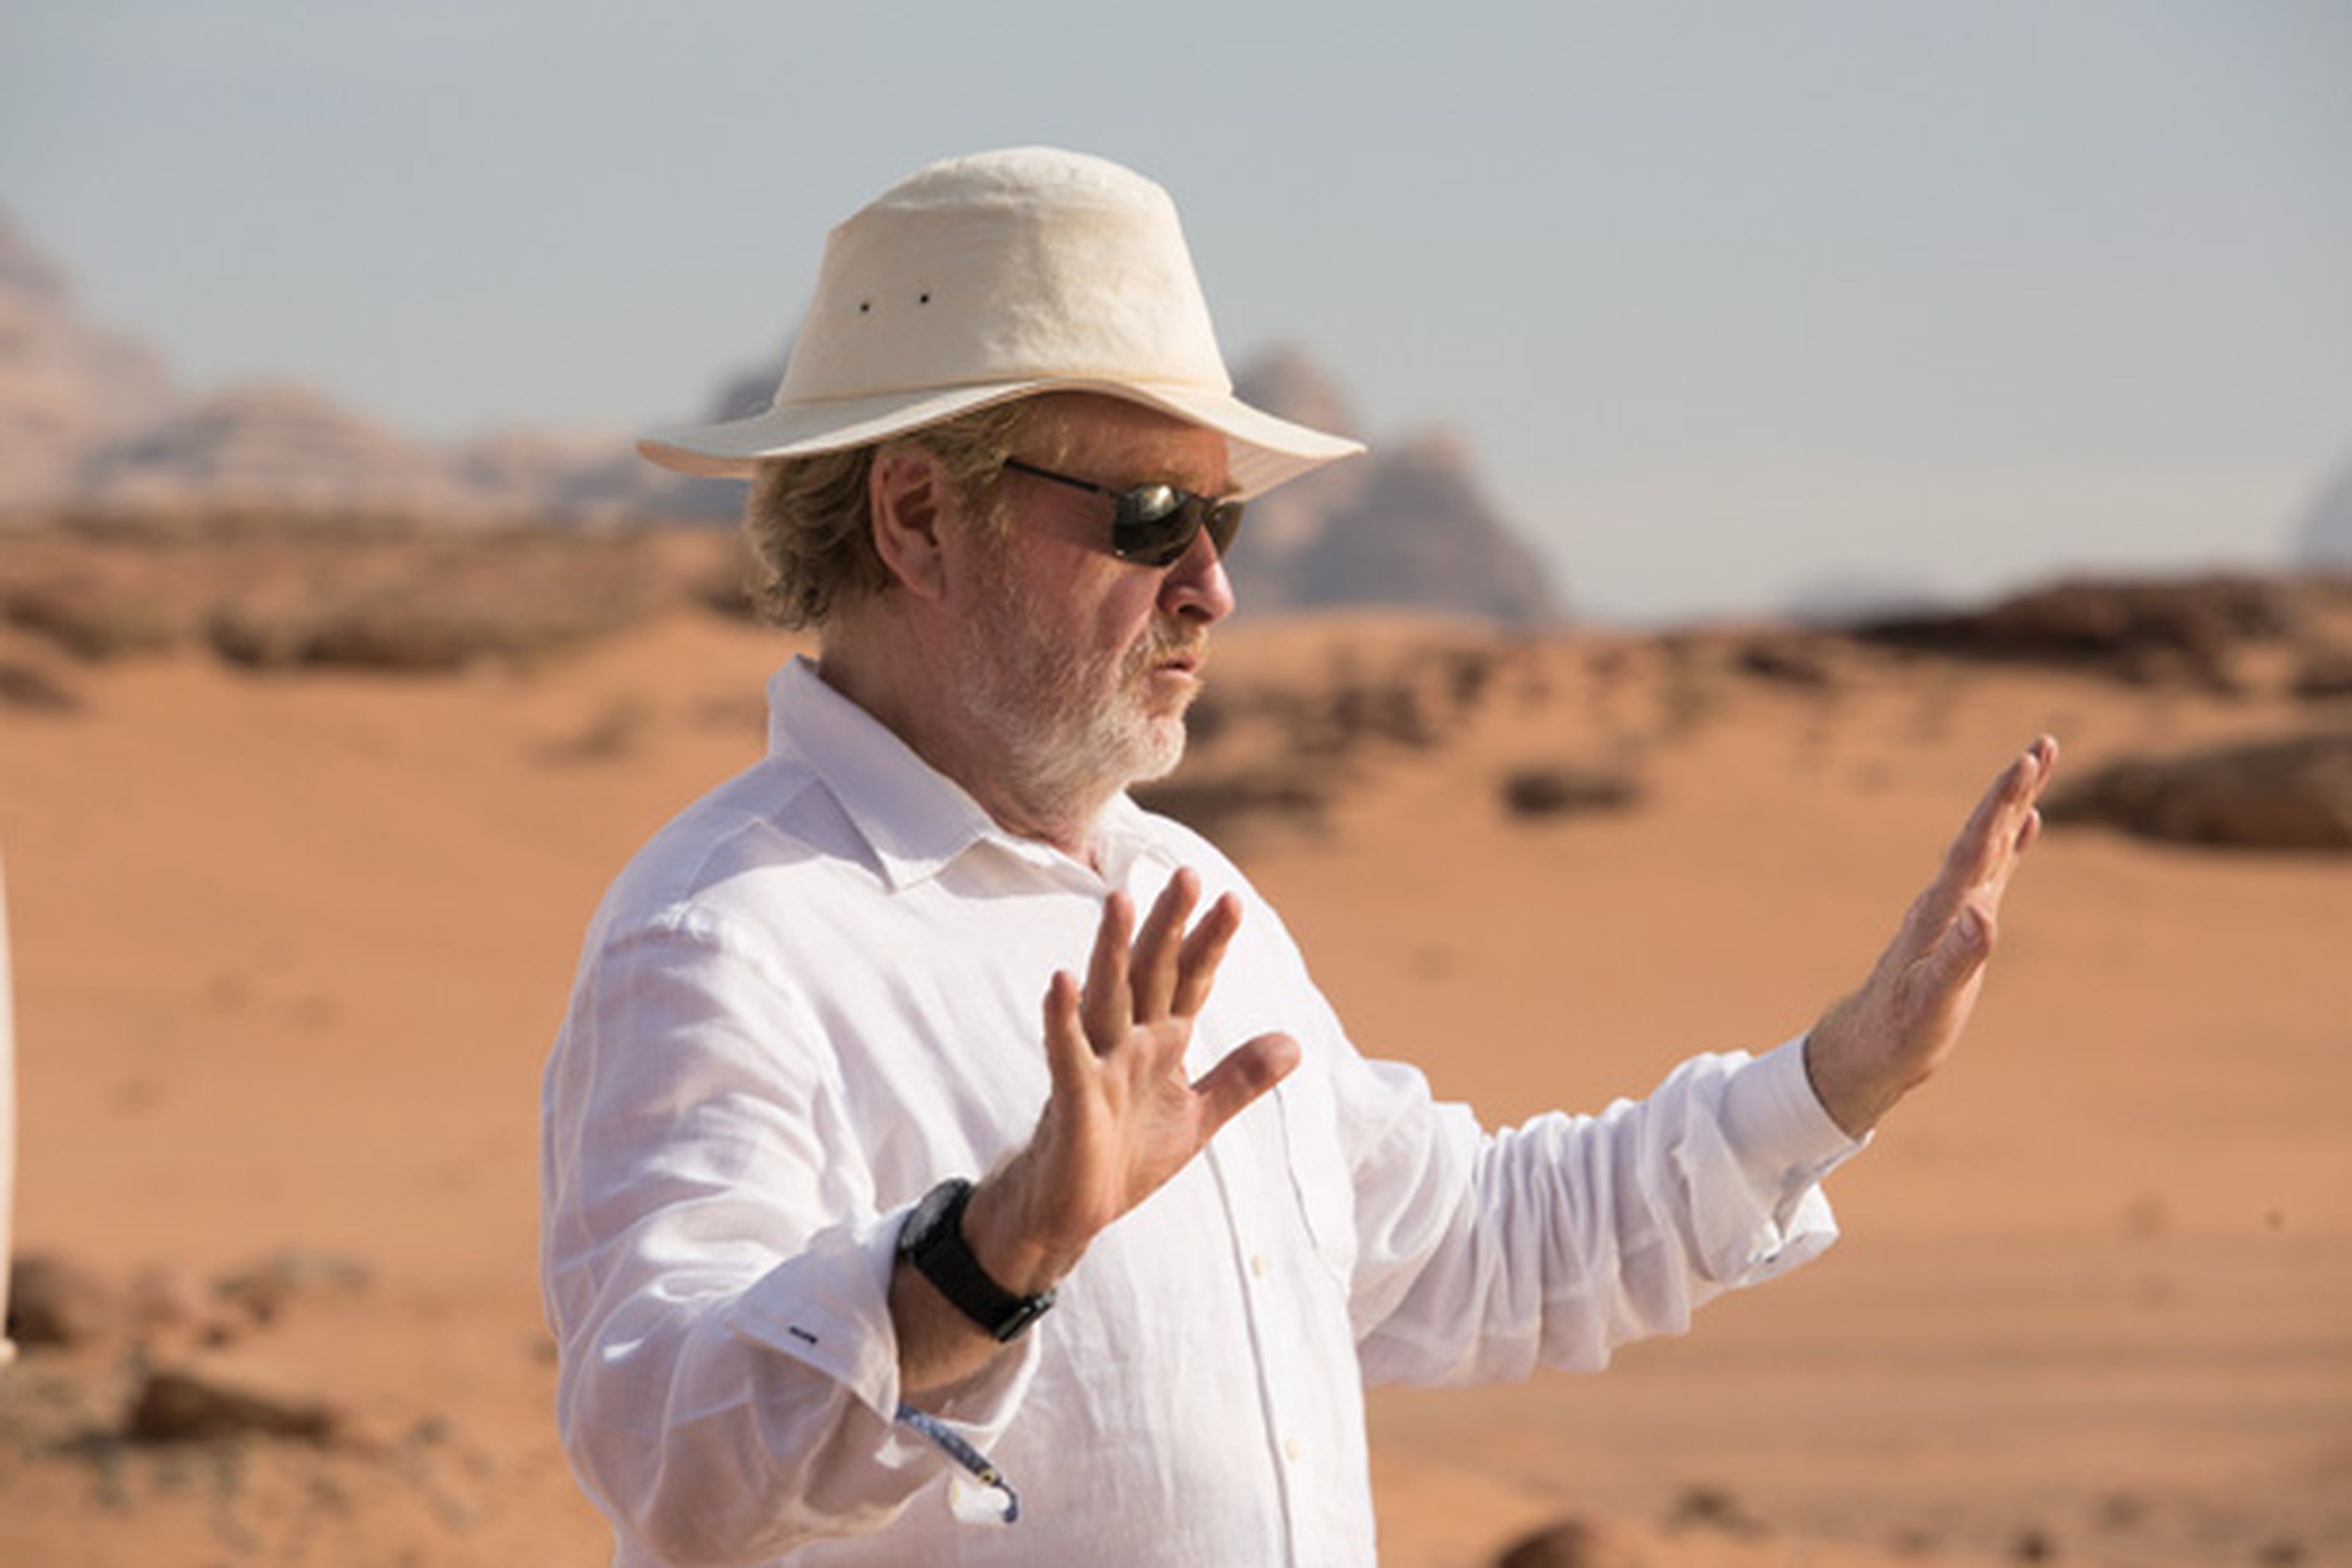 Marte - Entrevista a Ridley Scott y ediciones caseras de la película